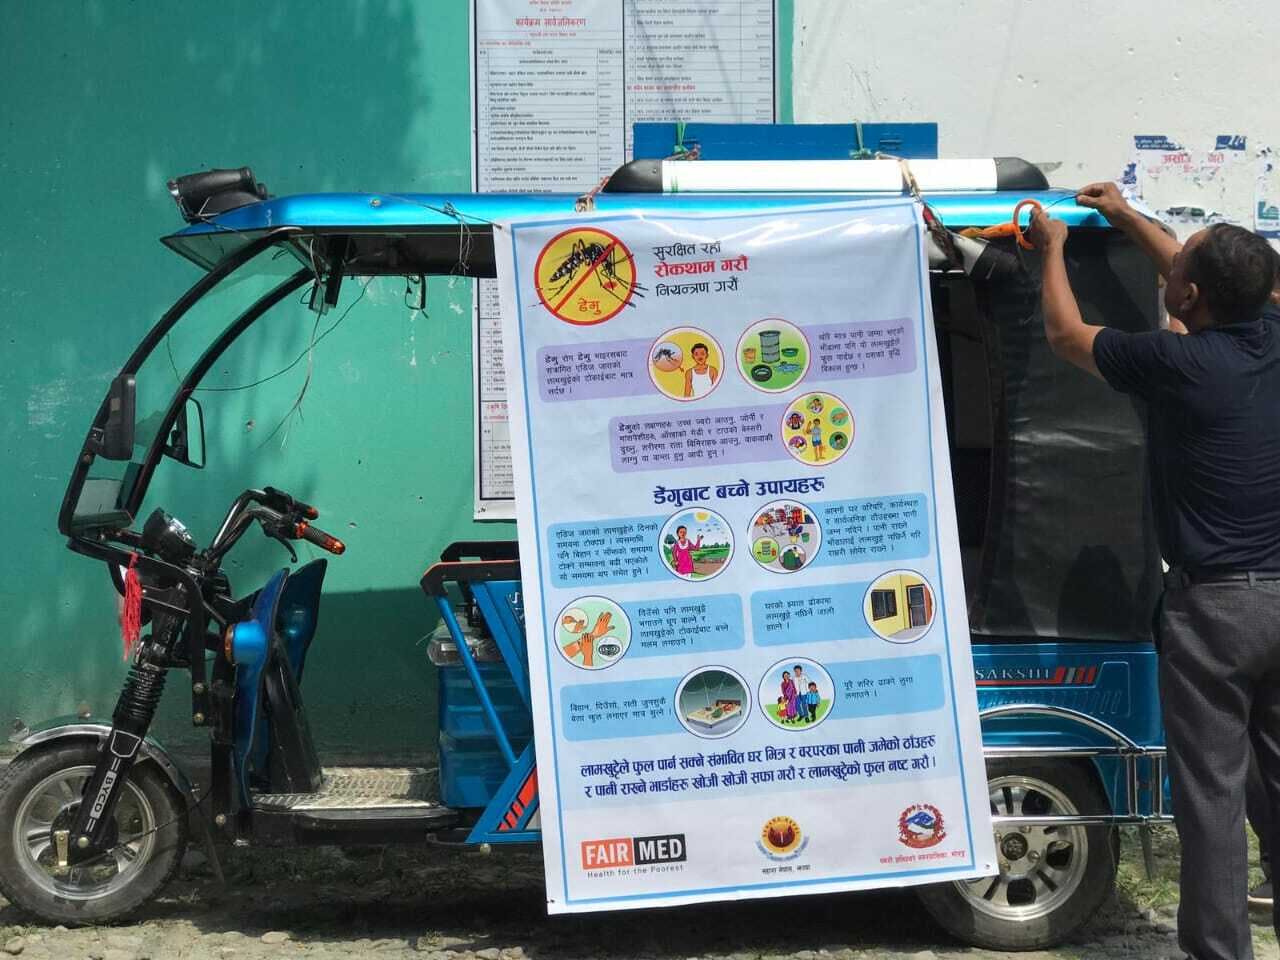 Une affiche sur la dengue est accrochée sur le côté d'un rickshaw motorisé.